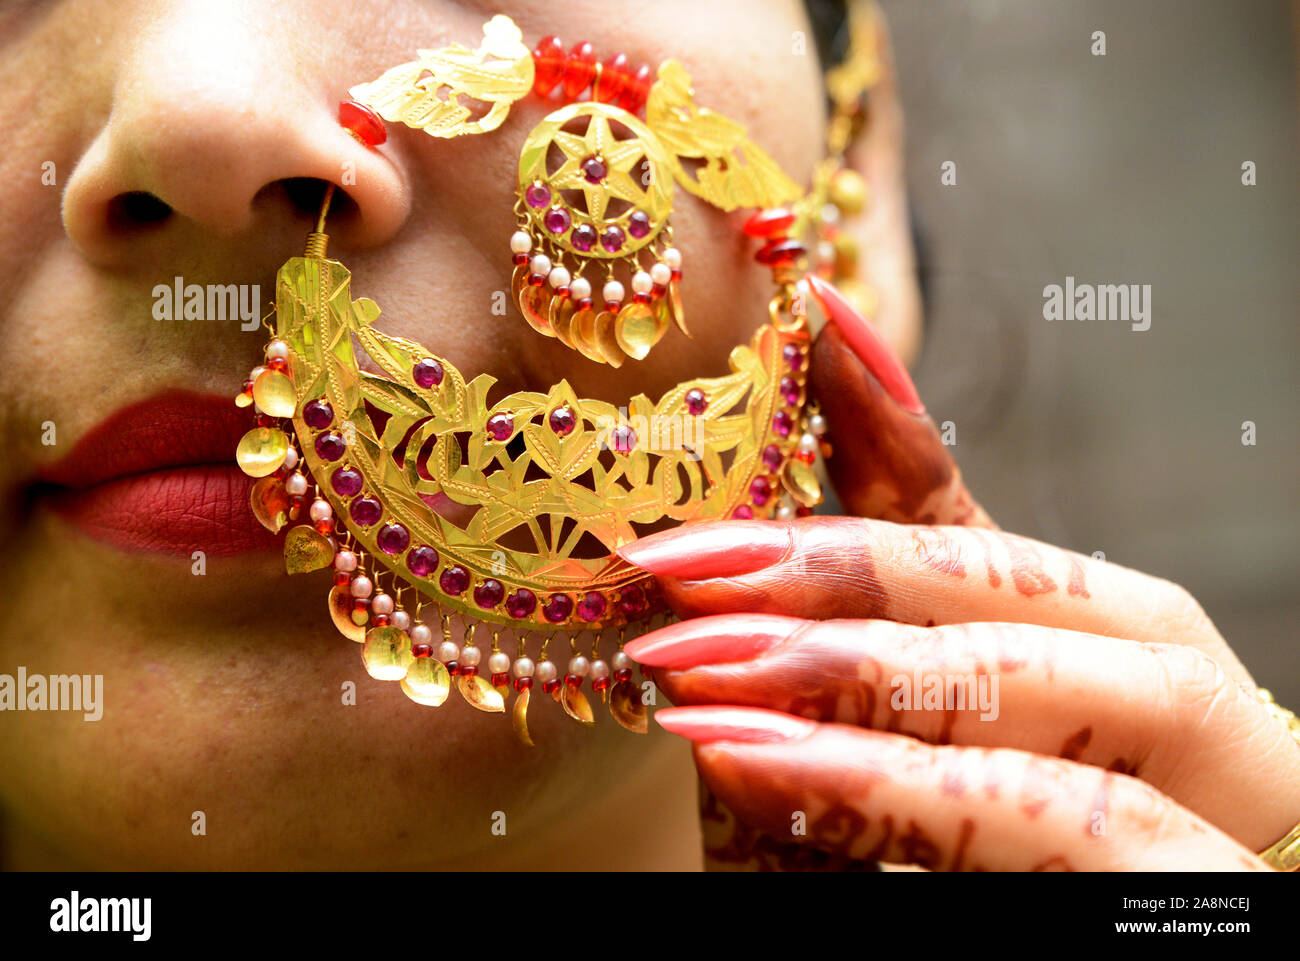 Anneau pour le nez - Libre ( femmes indiennes montrant anneau dans le nez ) Banque D'Images